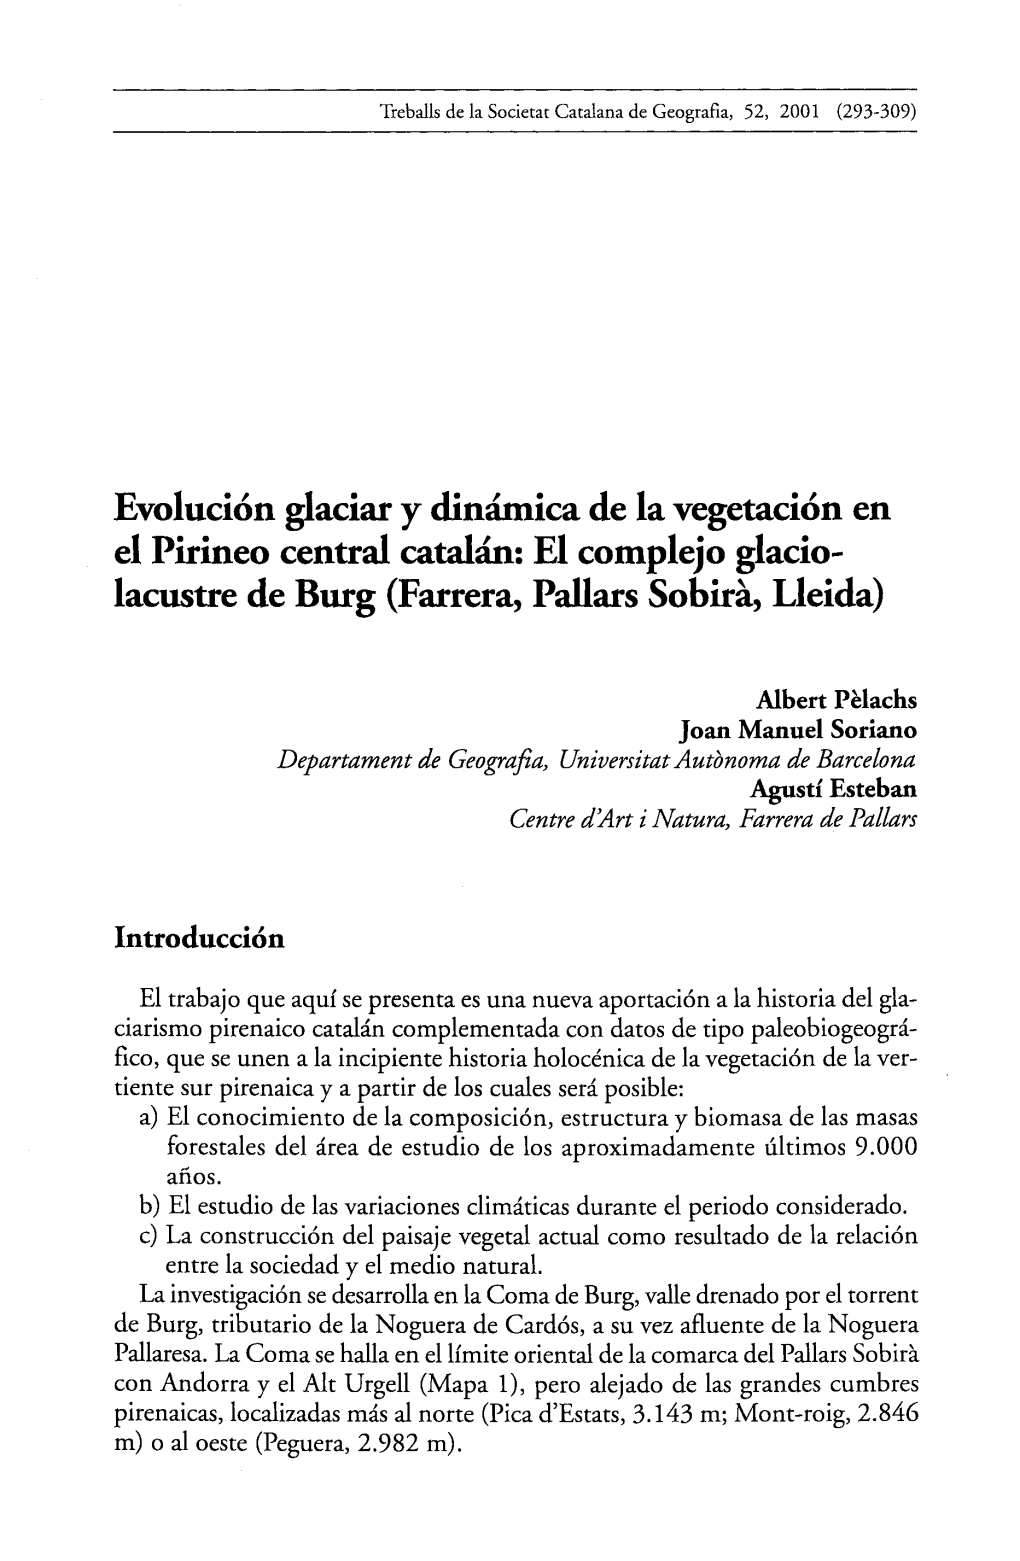 Evolución Glaciar Y Dinámica De La Vegetación En El Pirineo Central Catalán 295